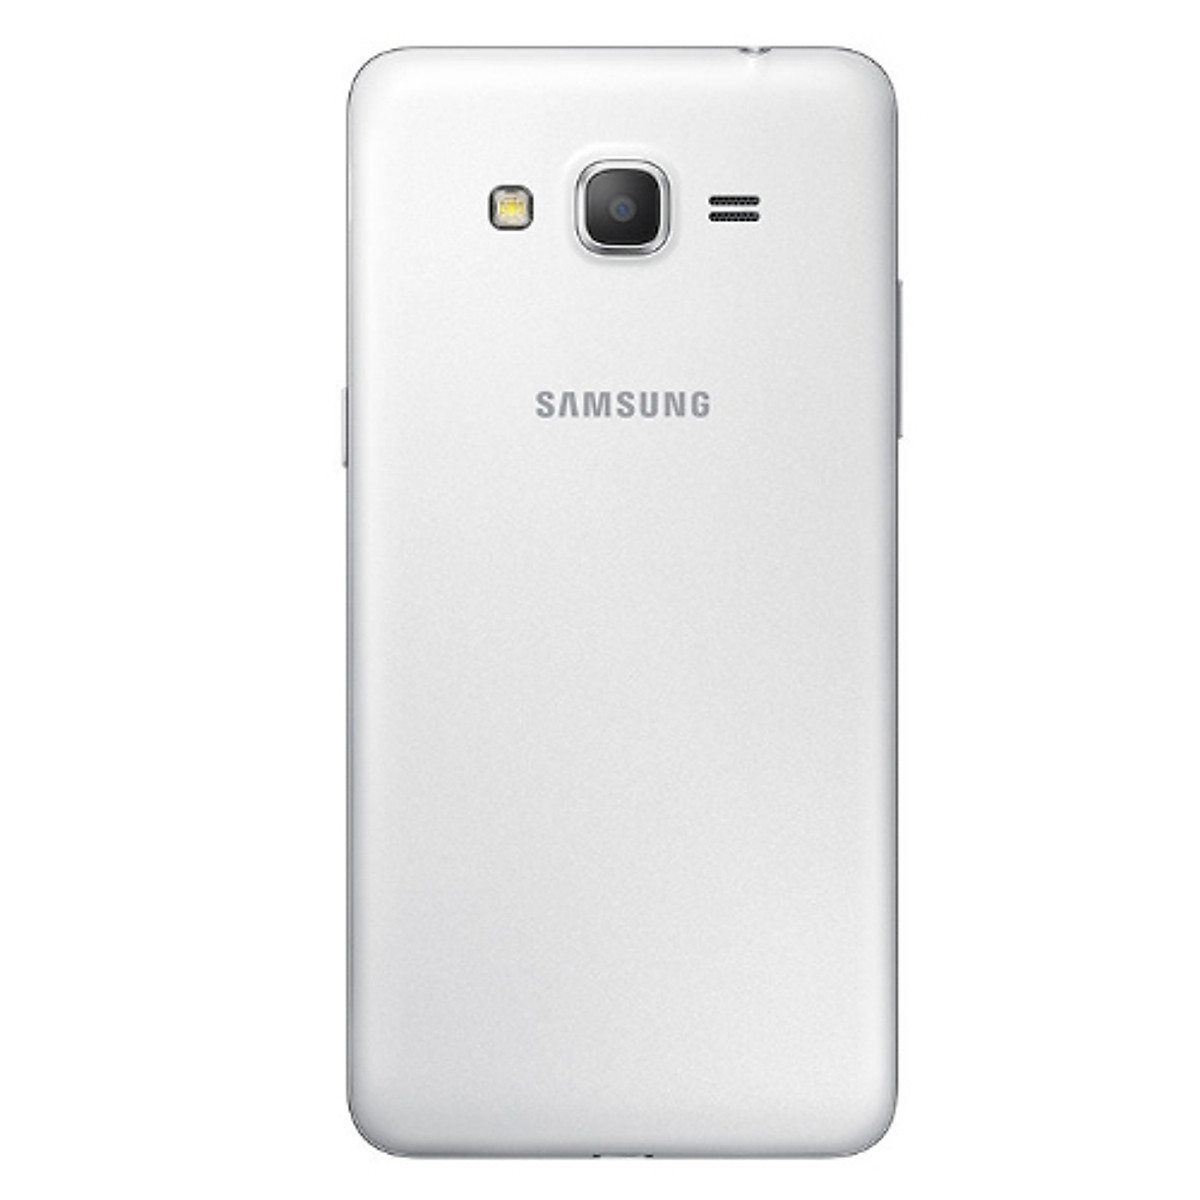 Mua Samsung Galaxy Grand Prime G530H - Hàng Chính Hãng